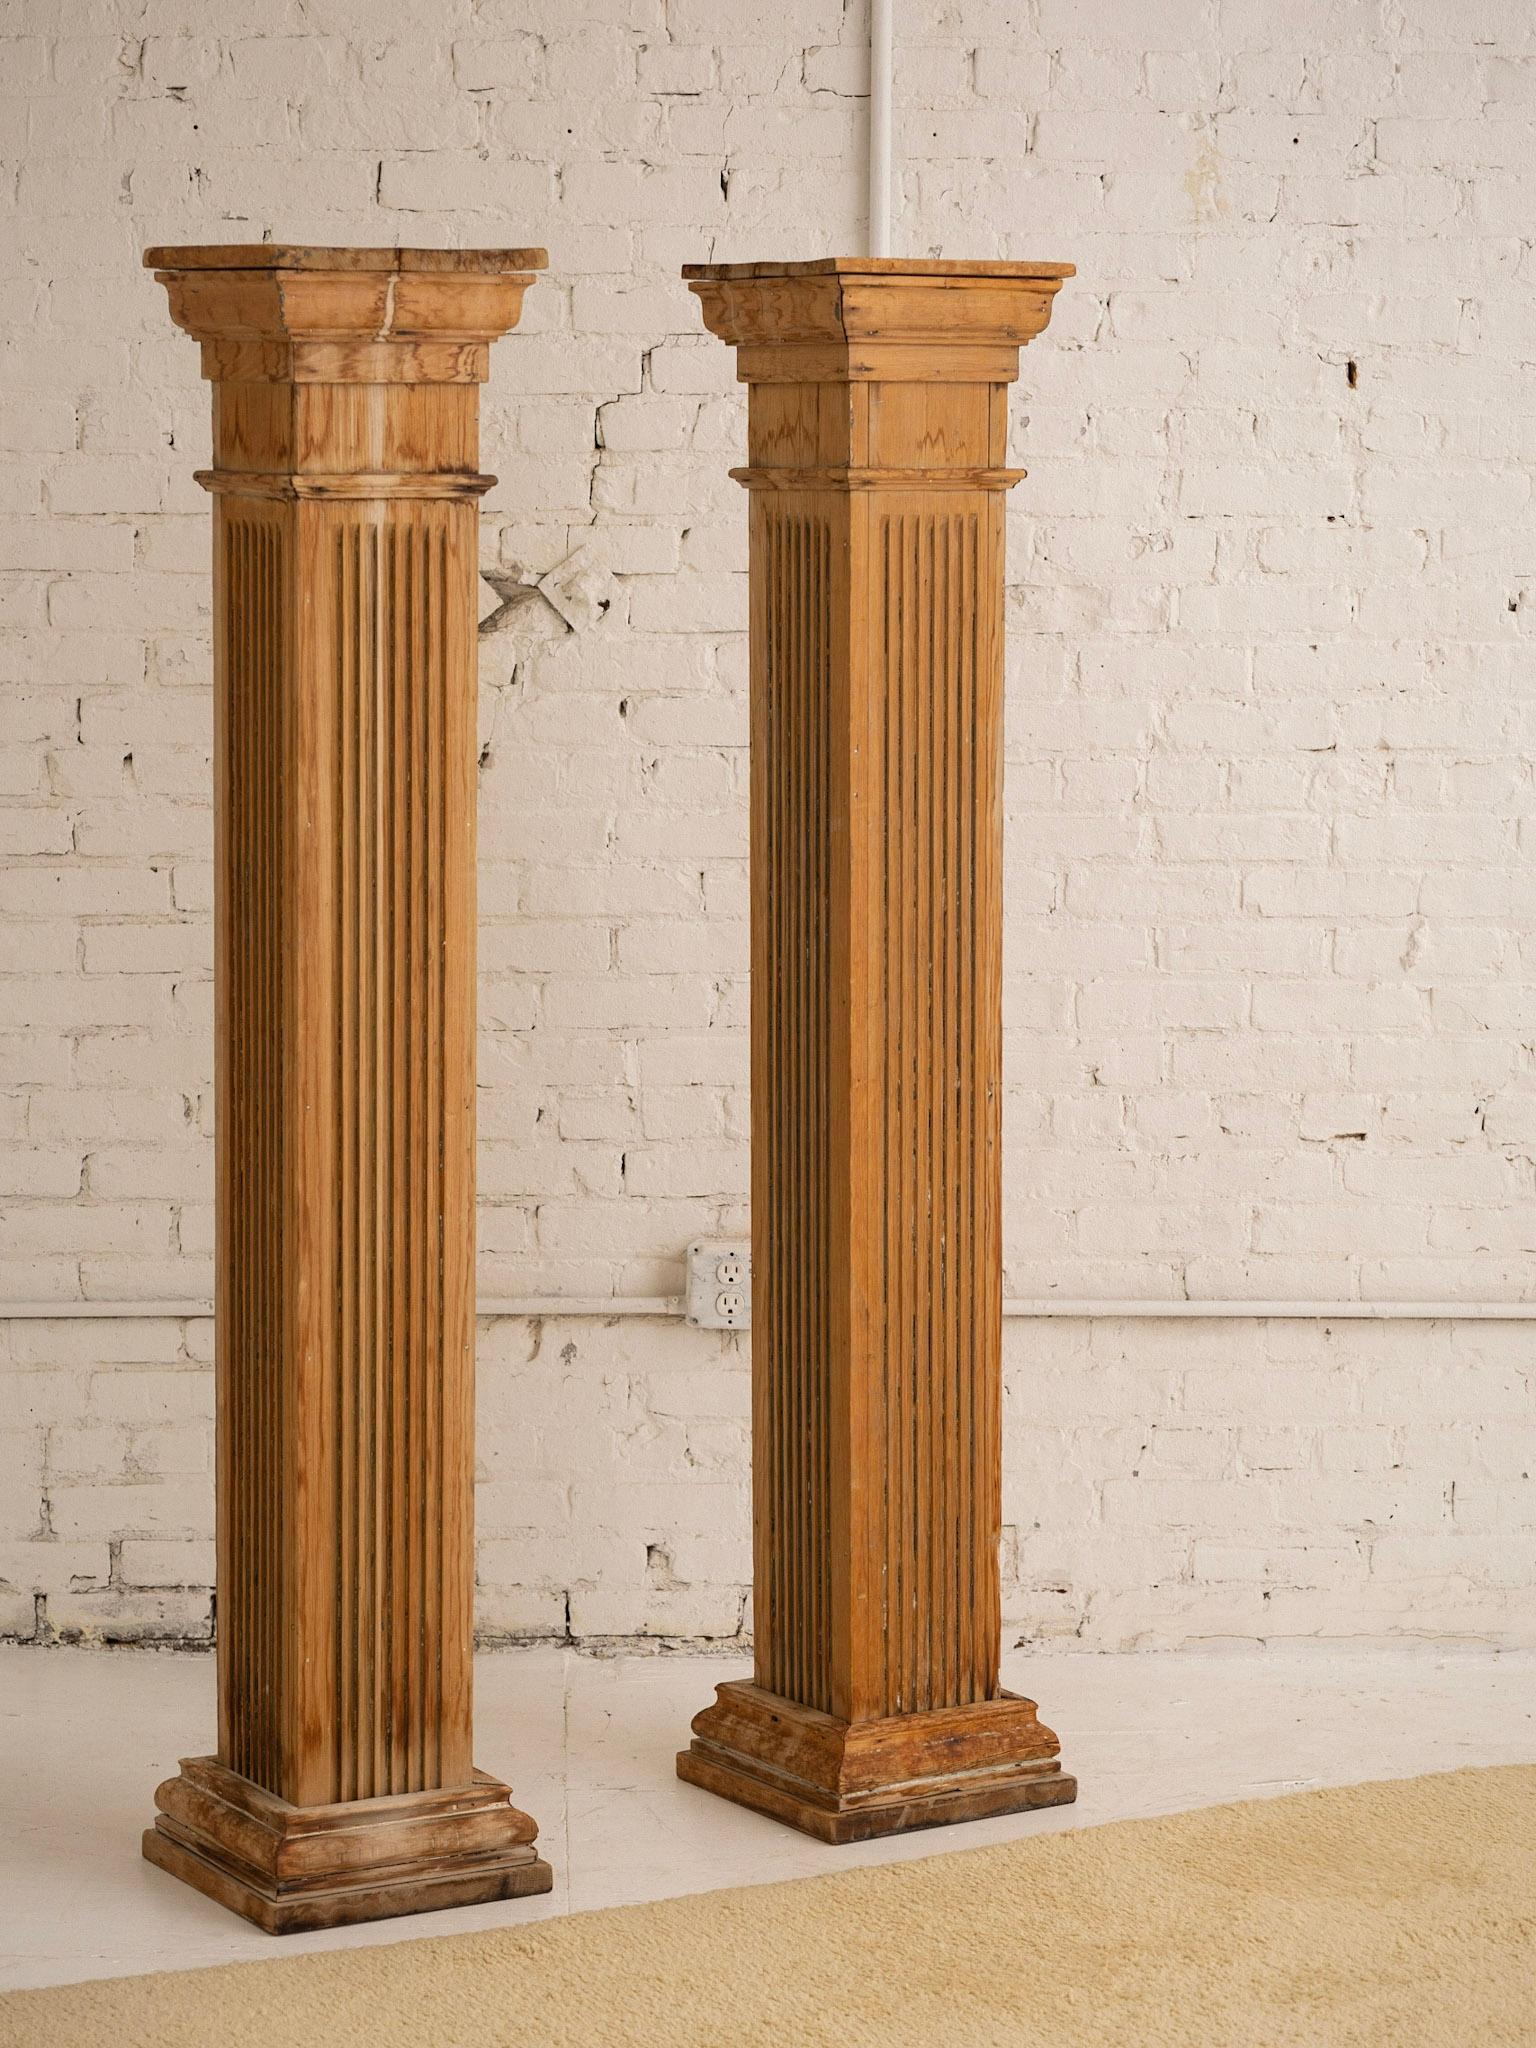 Paire de colonnes architecturales indépendantes, récupérées et antiques. Style dorique gréco-romain. Silhouette carrée. La peinture d'origine a été retirée pour laisser apparaître un bois richement patiné.